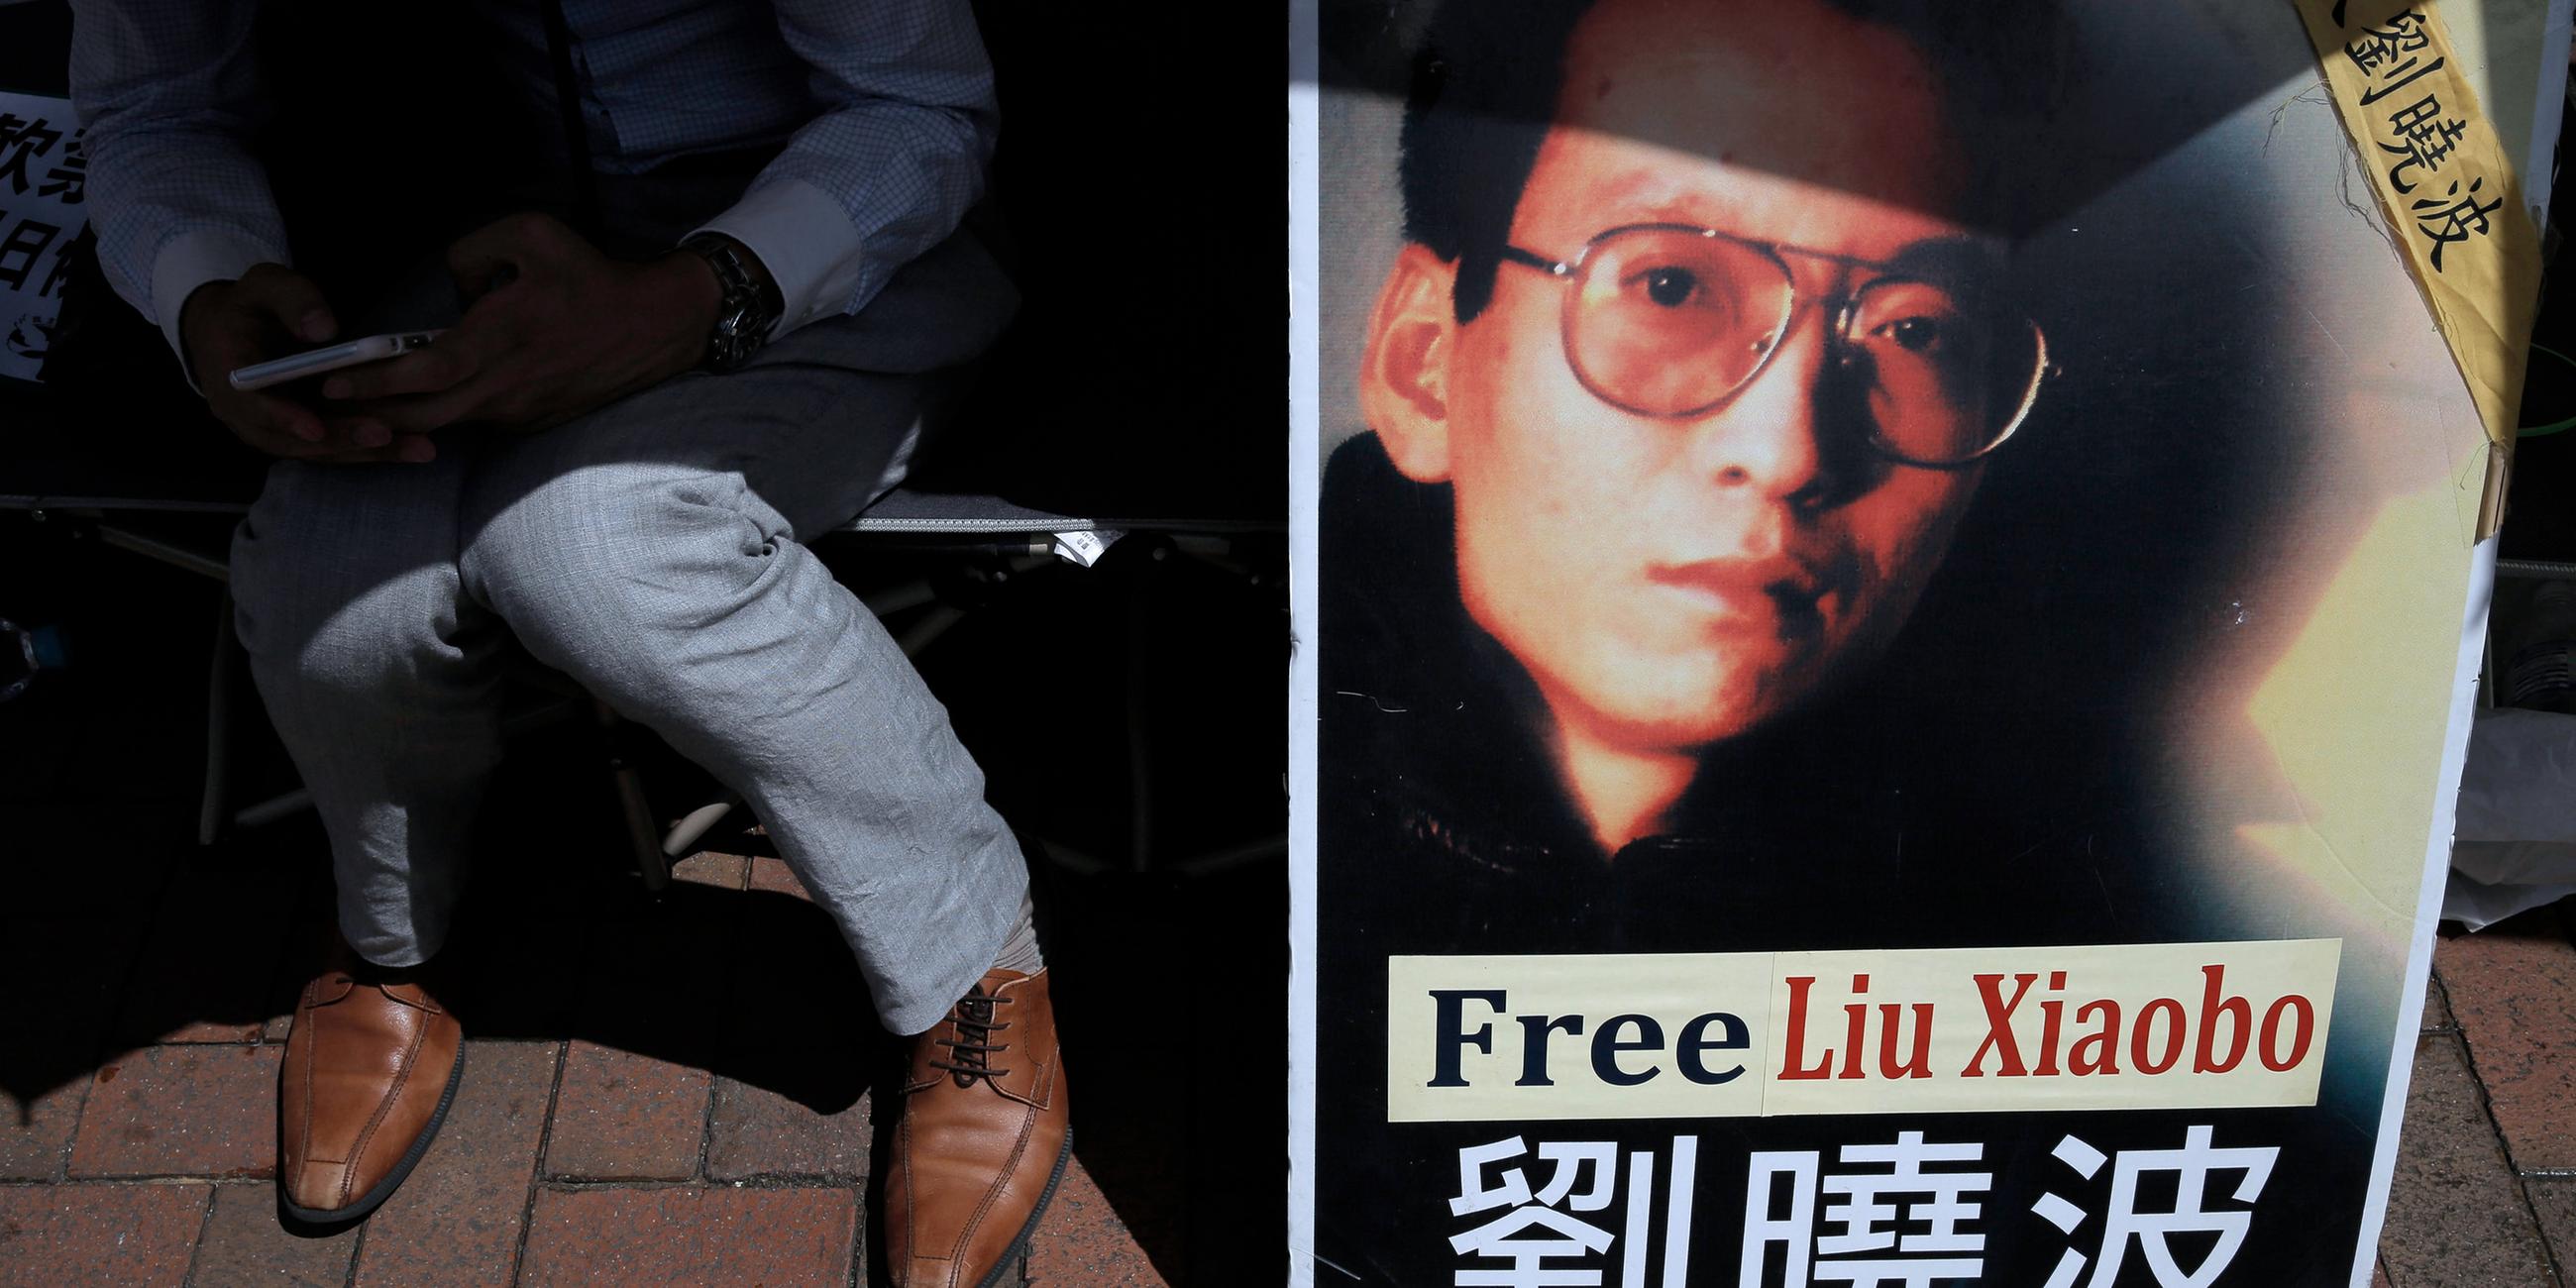 Ein Demonstrant zeigt während einer Demonstration vor dem chinesischen Verbindungsbüro in Hongkong ein Porträt des inhaftierten chinesischen Friedensnobelpreisträgers Liu Xiaobo